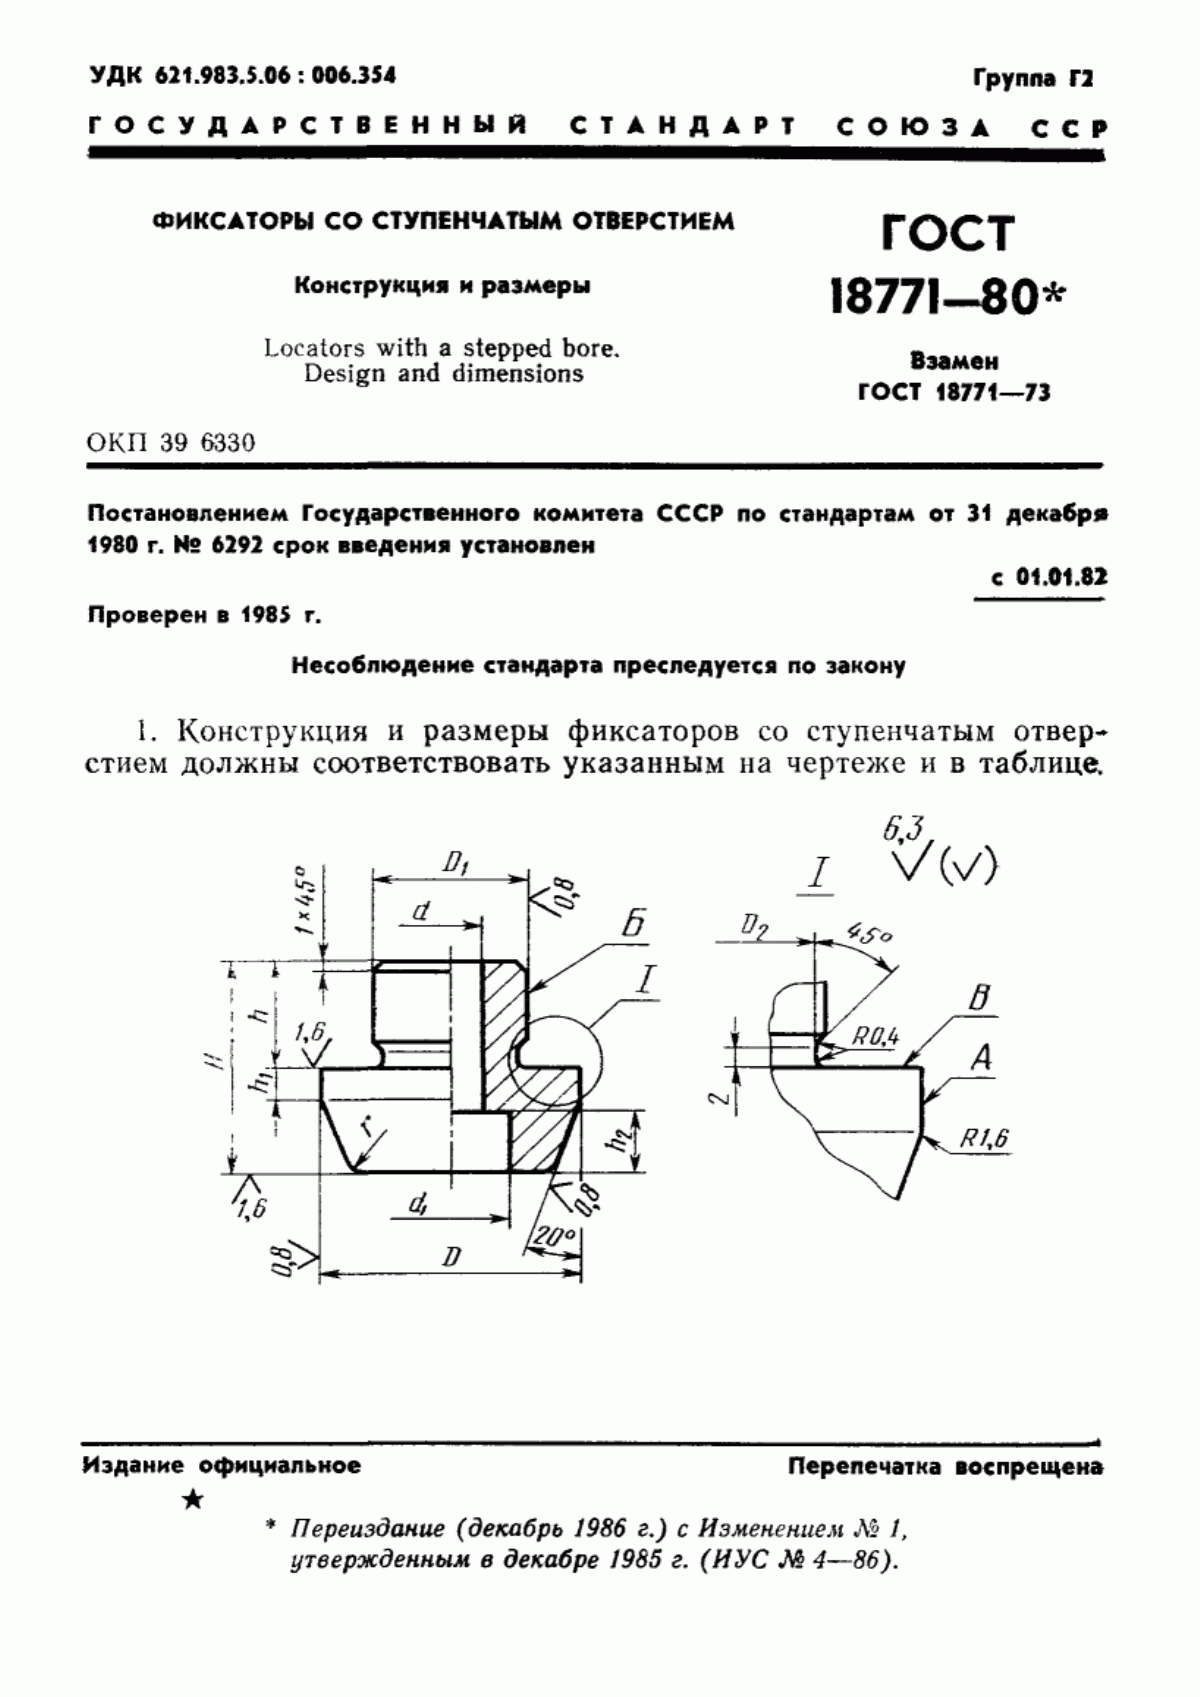 ГОСТ 18771-80 Фиксаторы со ступенчатым отверстием. Конструкция и размеры